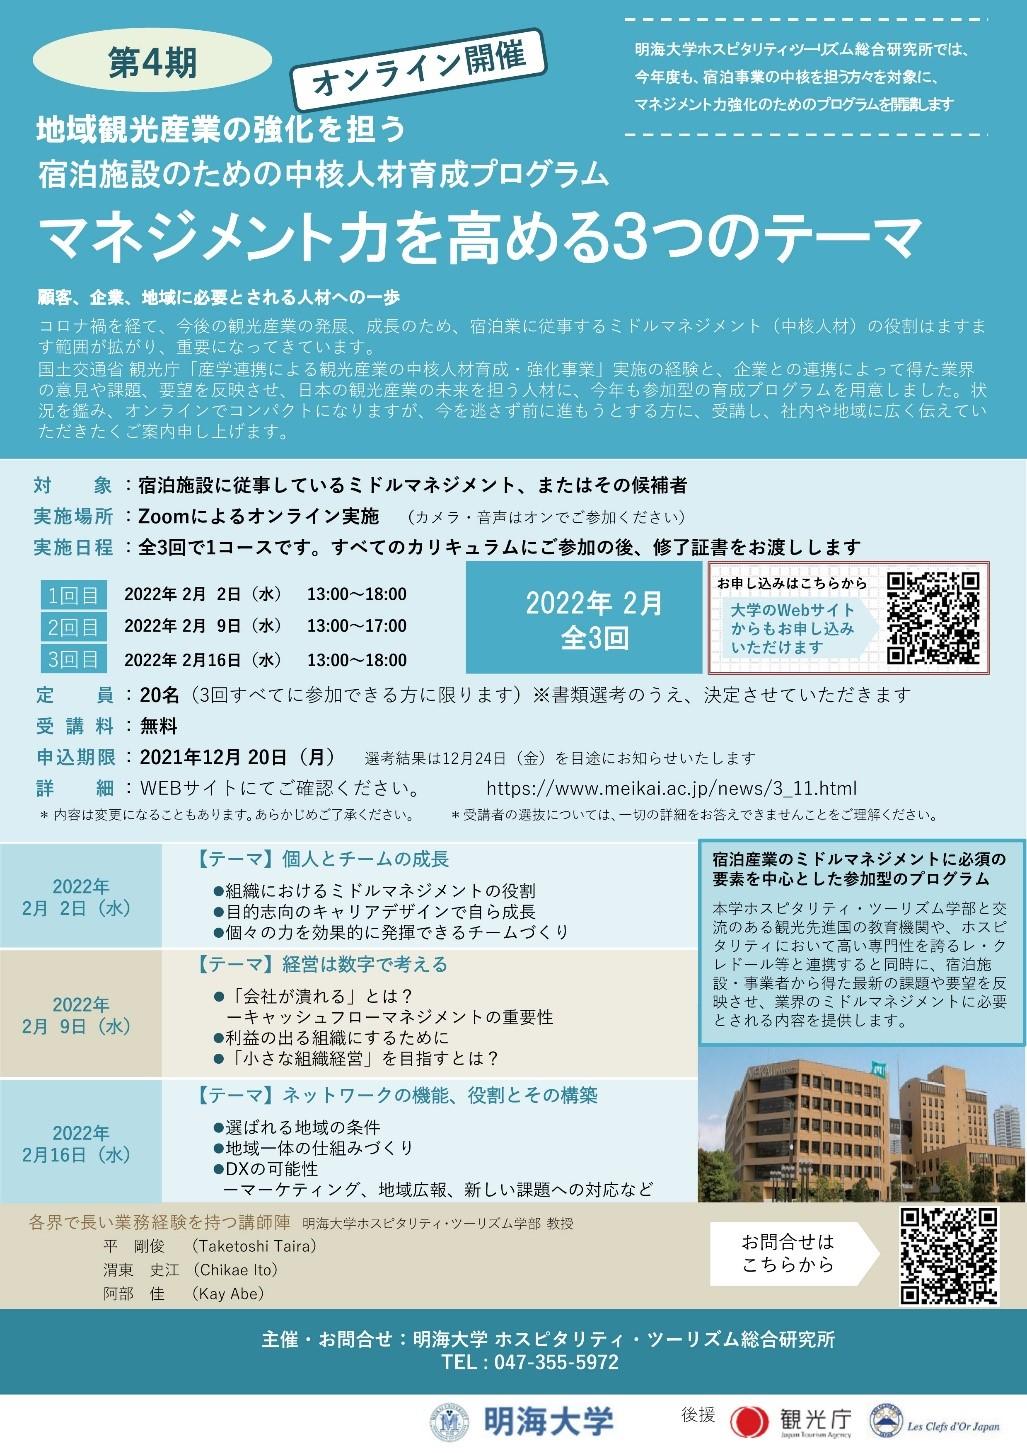 【明海大学】宿泊施設のミドルマネジメントを対象に中核人材育成プログラム第4期オンラインセミナーを開催